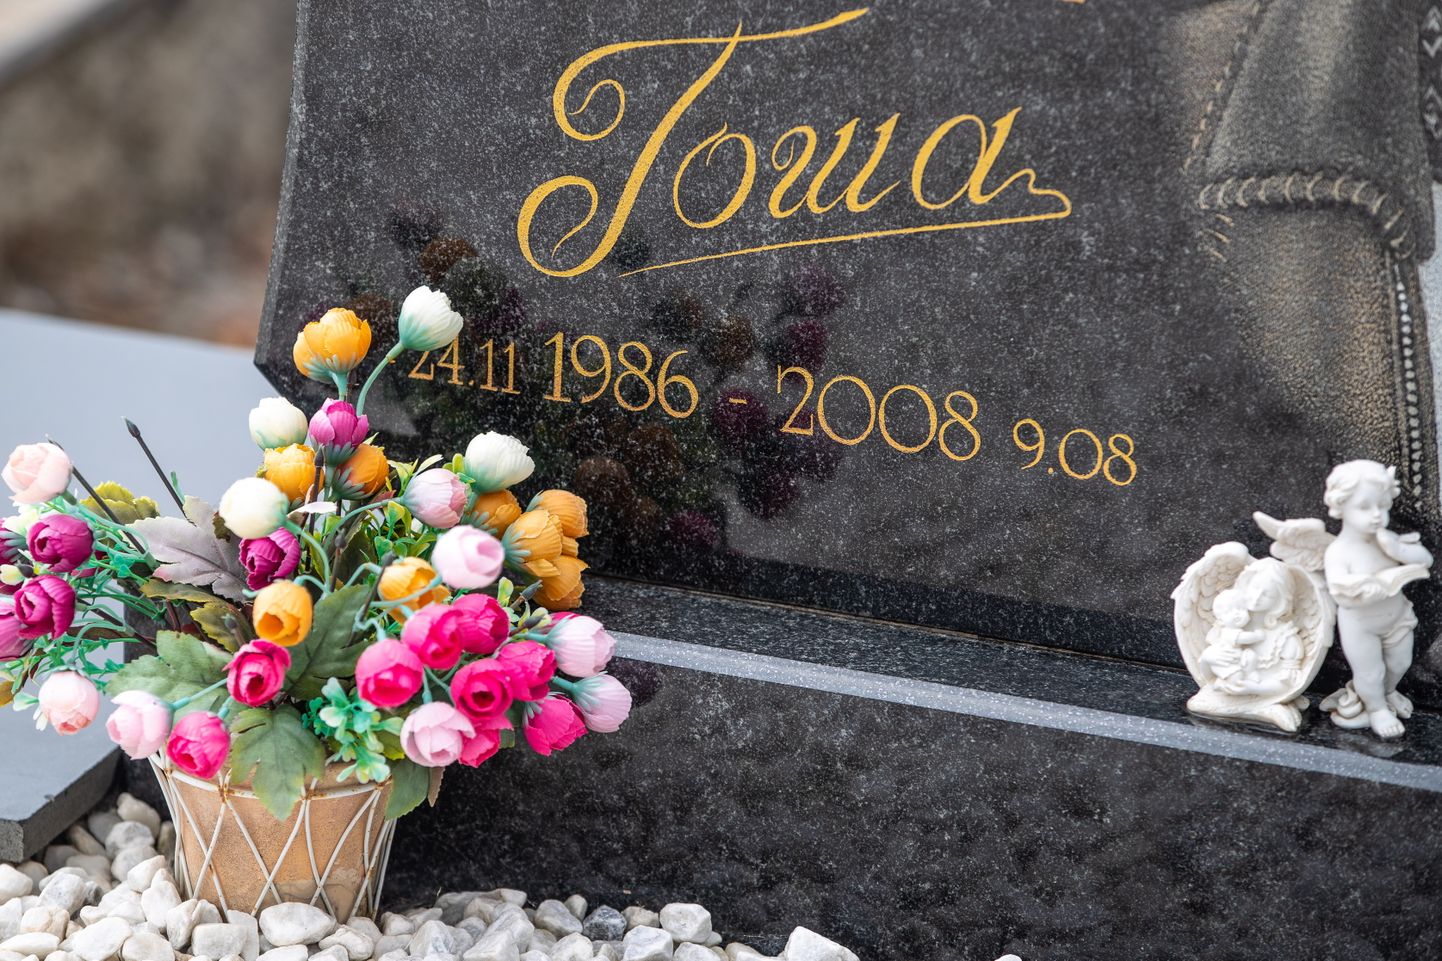 Могила молодого человека, погибшего в 2008 году во время российско-грузинского военного конфликта.